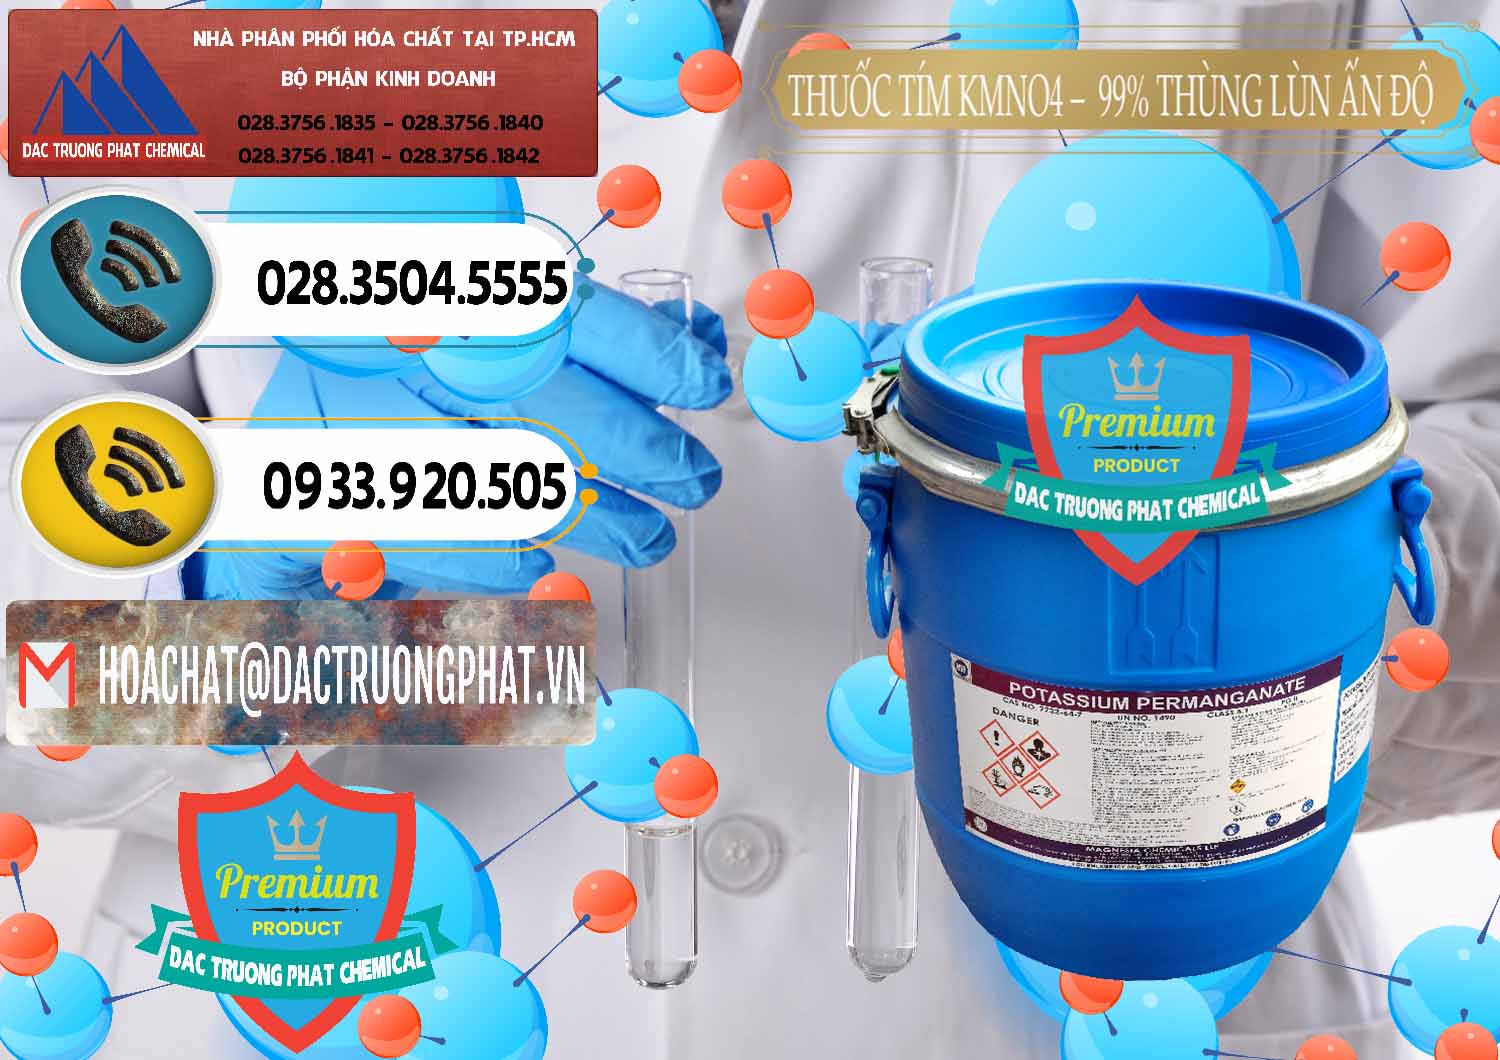 Công ty cung cấp - bán Thuốc Tím - KMNO4 Thùng Lùn 99% Magnesia Chemicals Ấn Độ India - 0165 - Đơn vị chuyên cung cấp & nhập khẩu hóa chất tại TP.HCM - hoachatdetnhuom.vn